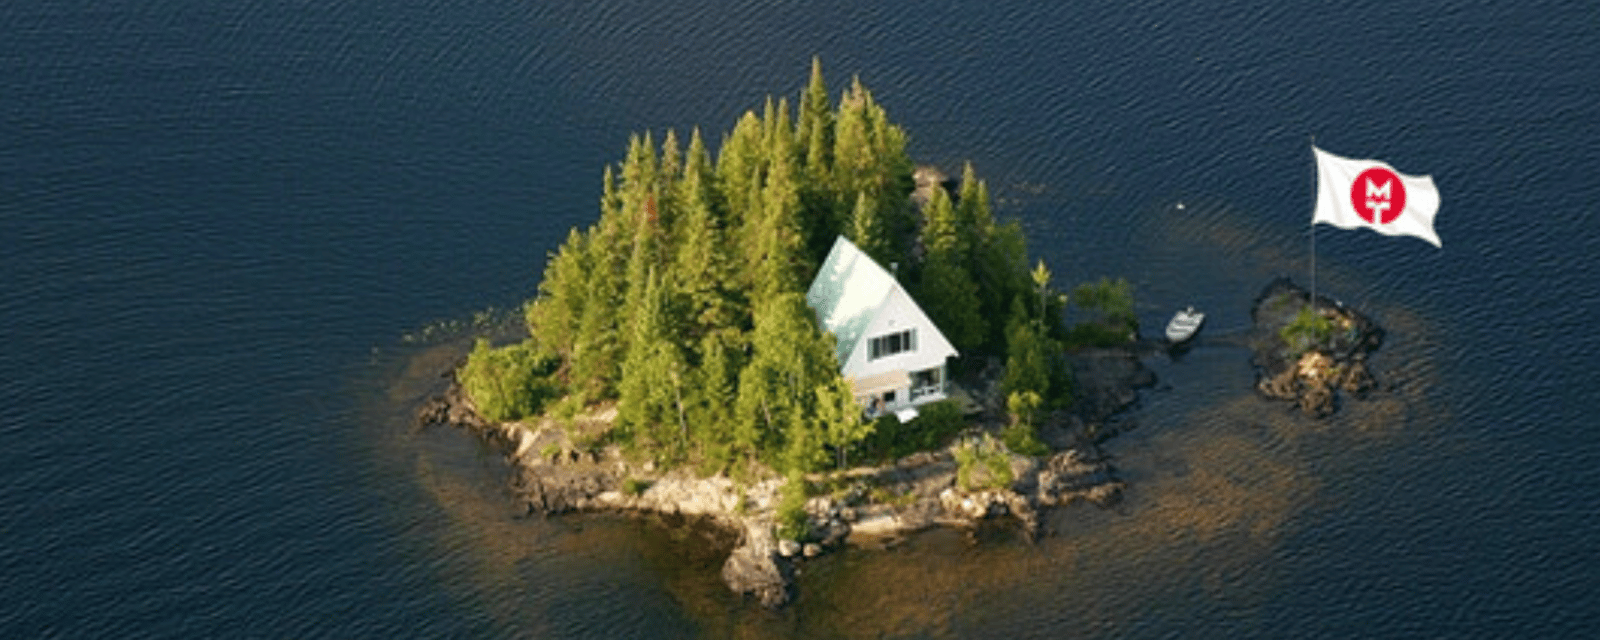 Cette entreprise québécoise achète une île privée pour le bien-être de ses employés